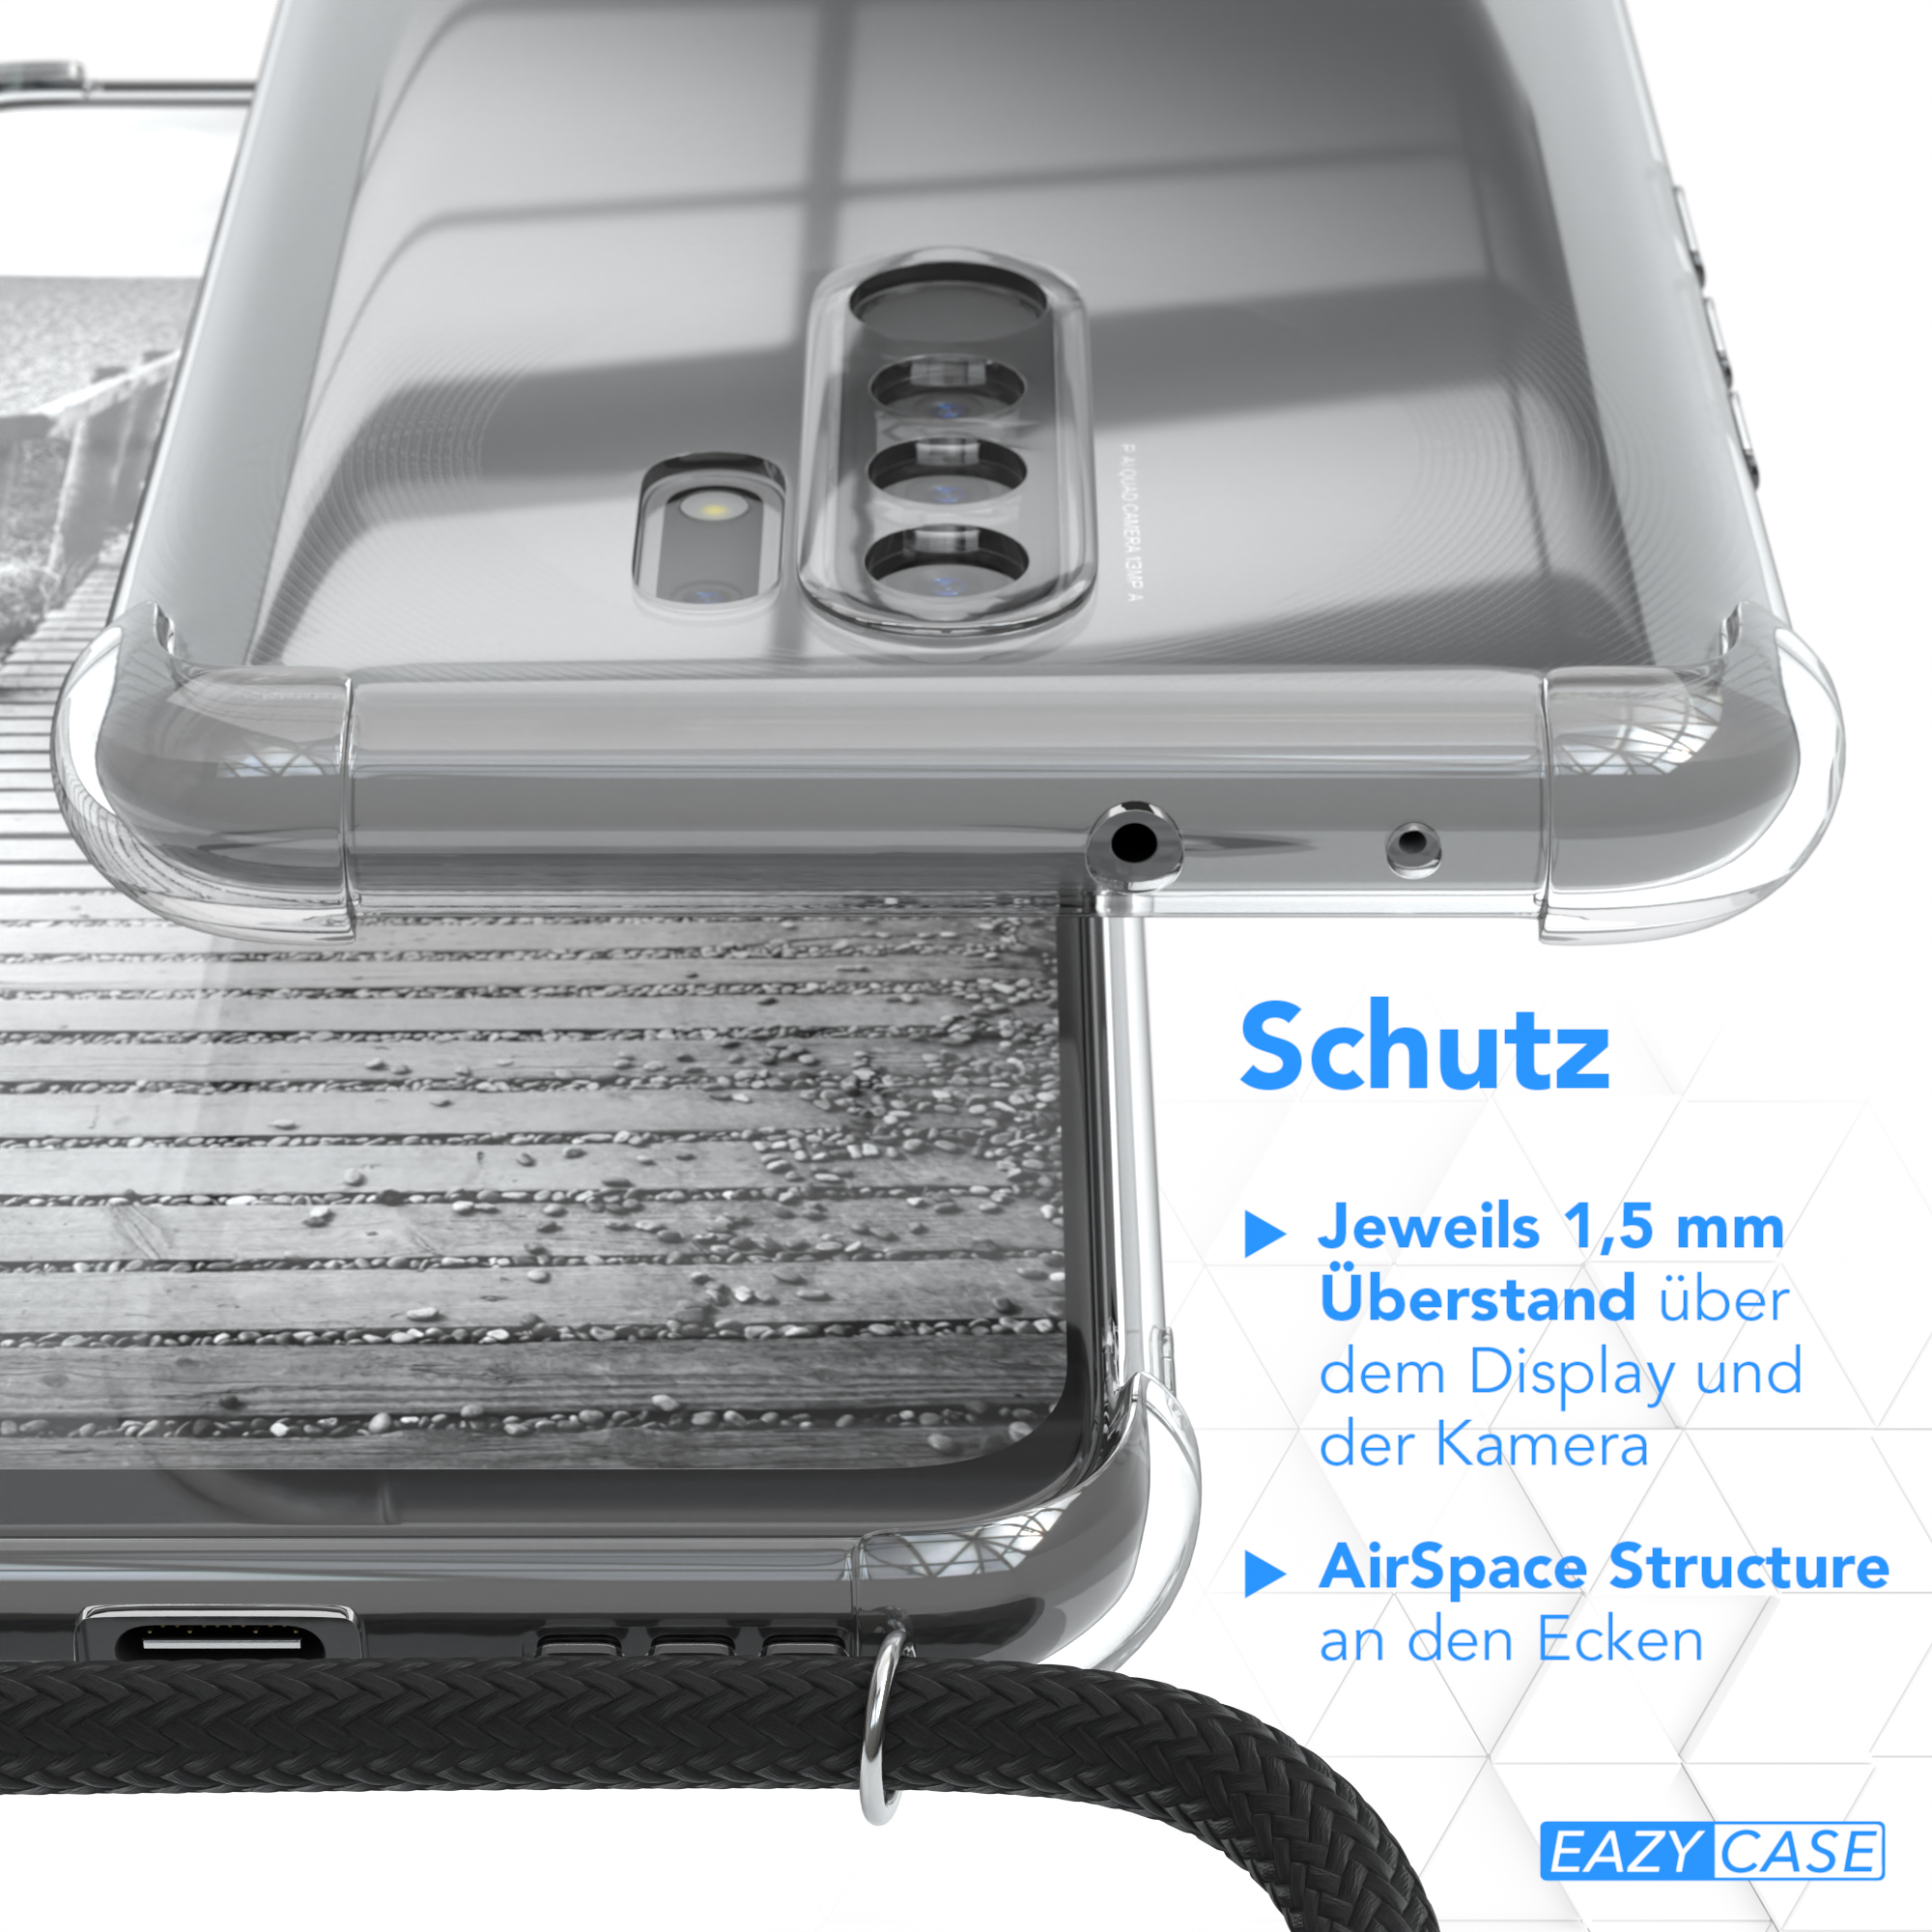 EAZY extra Redmi Handykette + Umhängetasche, Redmi Gold Metall Kordel Prime, / Schwarz, CASE Xiaomi, 9 9